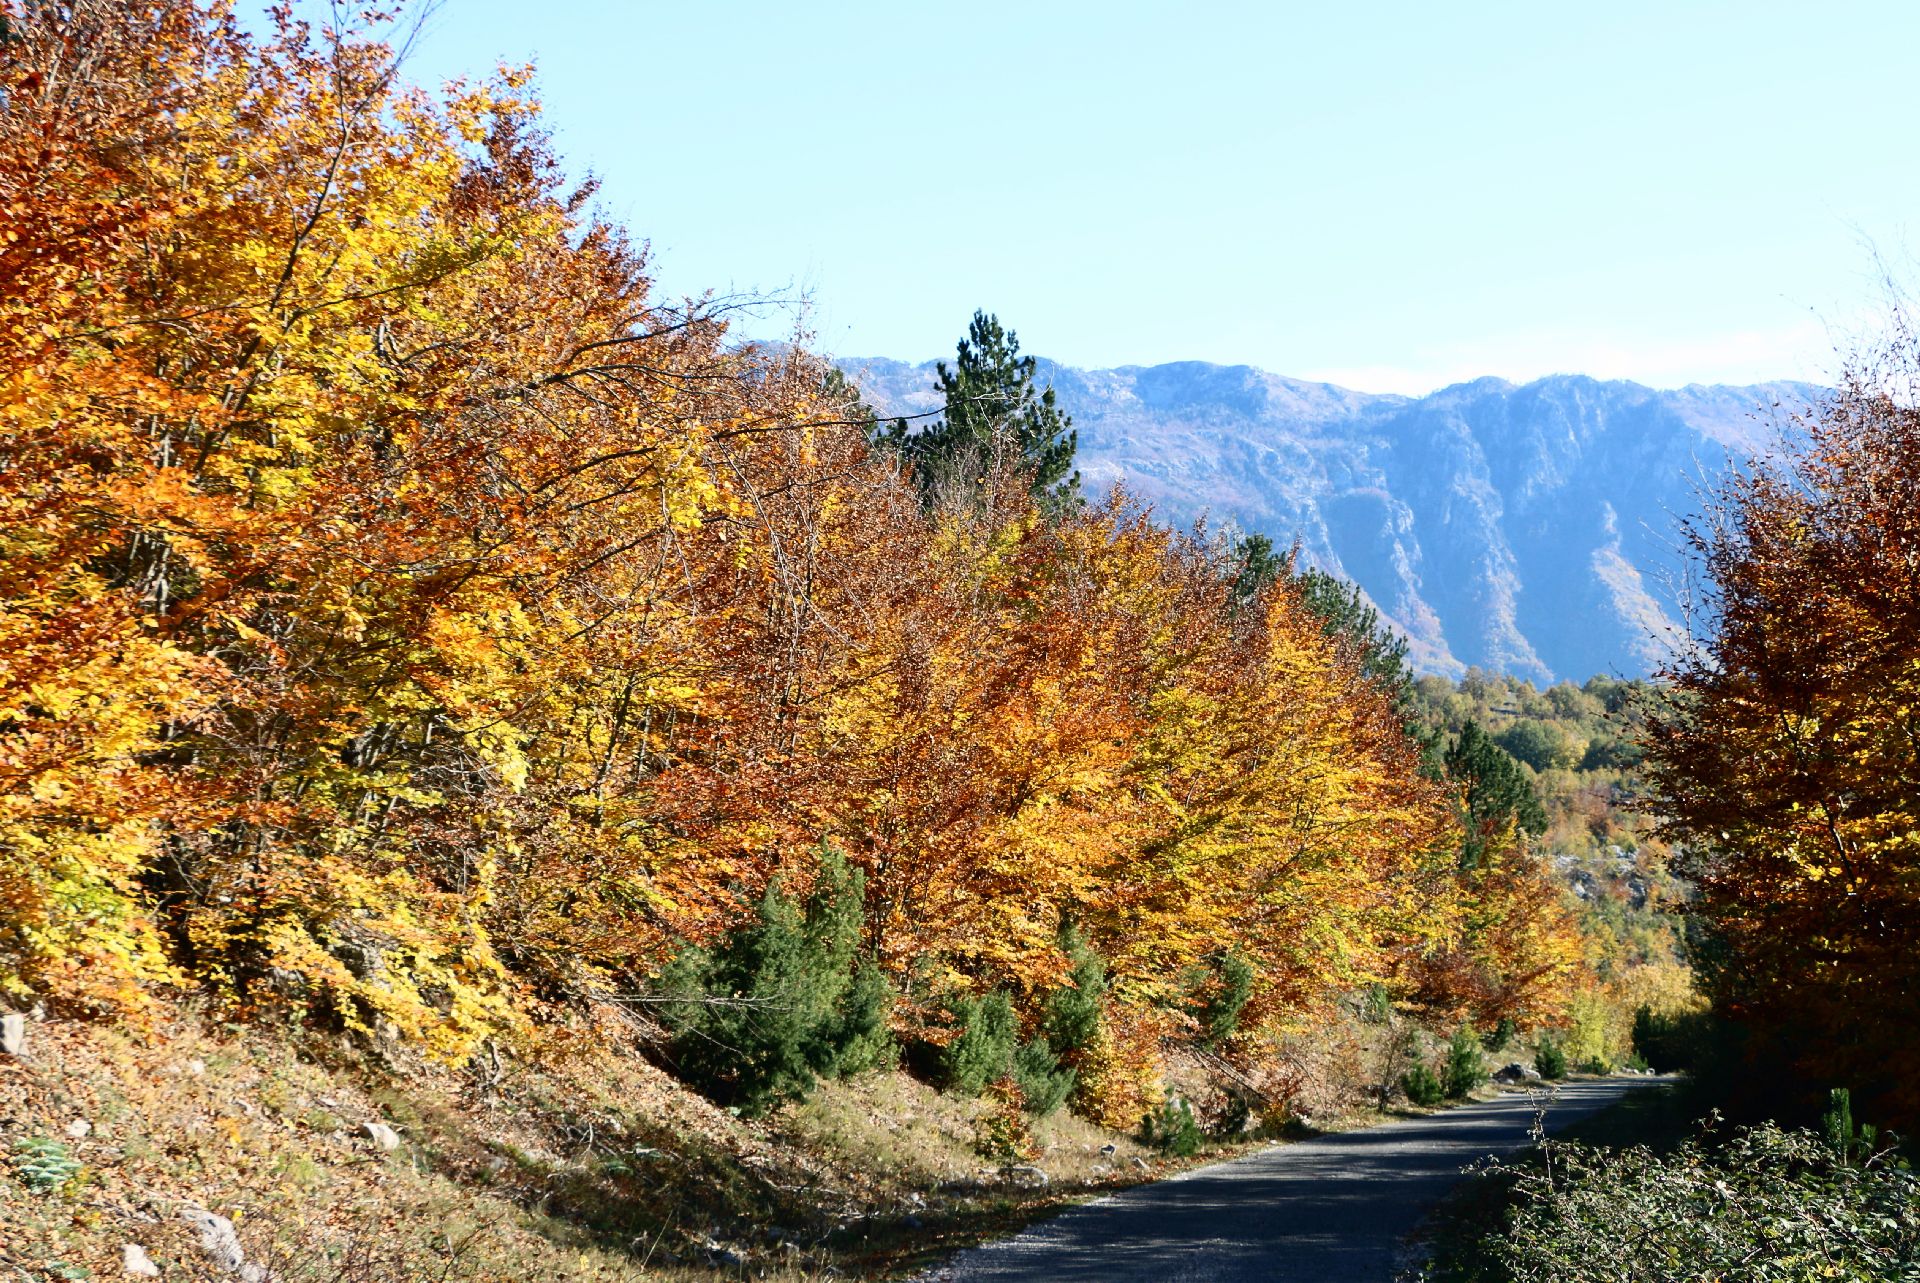 Exploring Montenegro in autumn